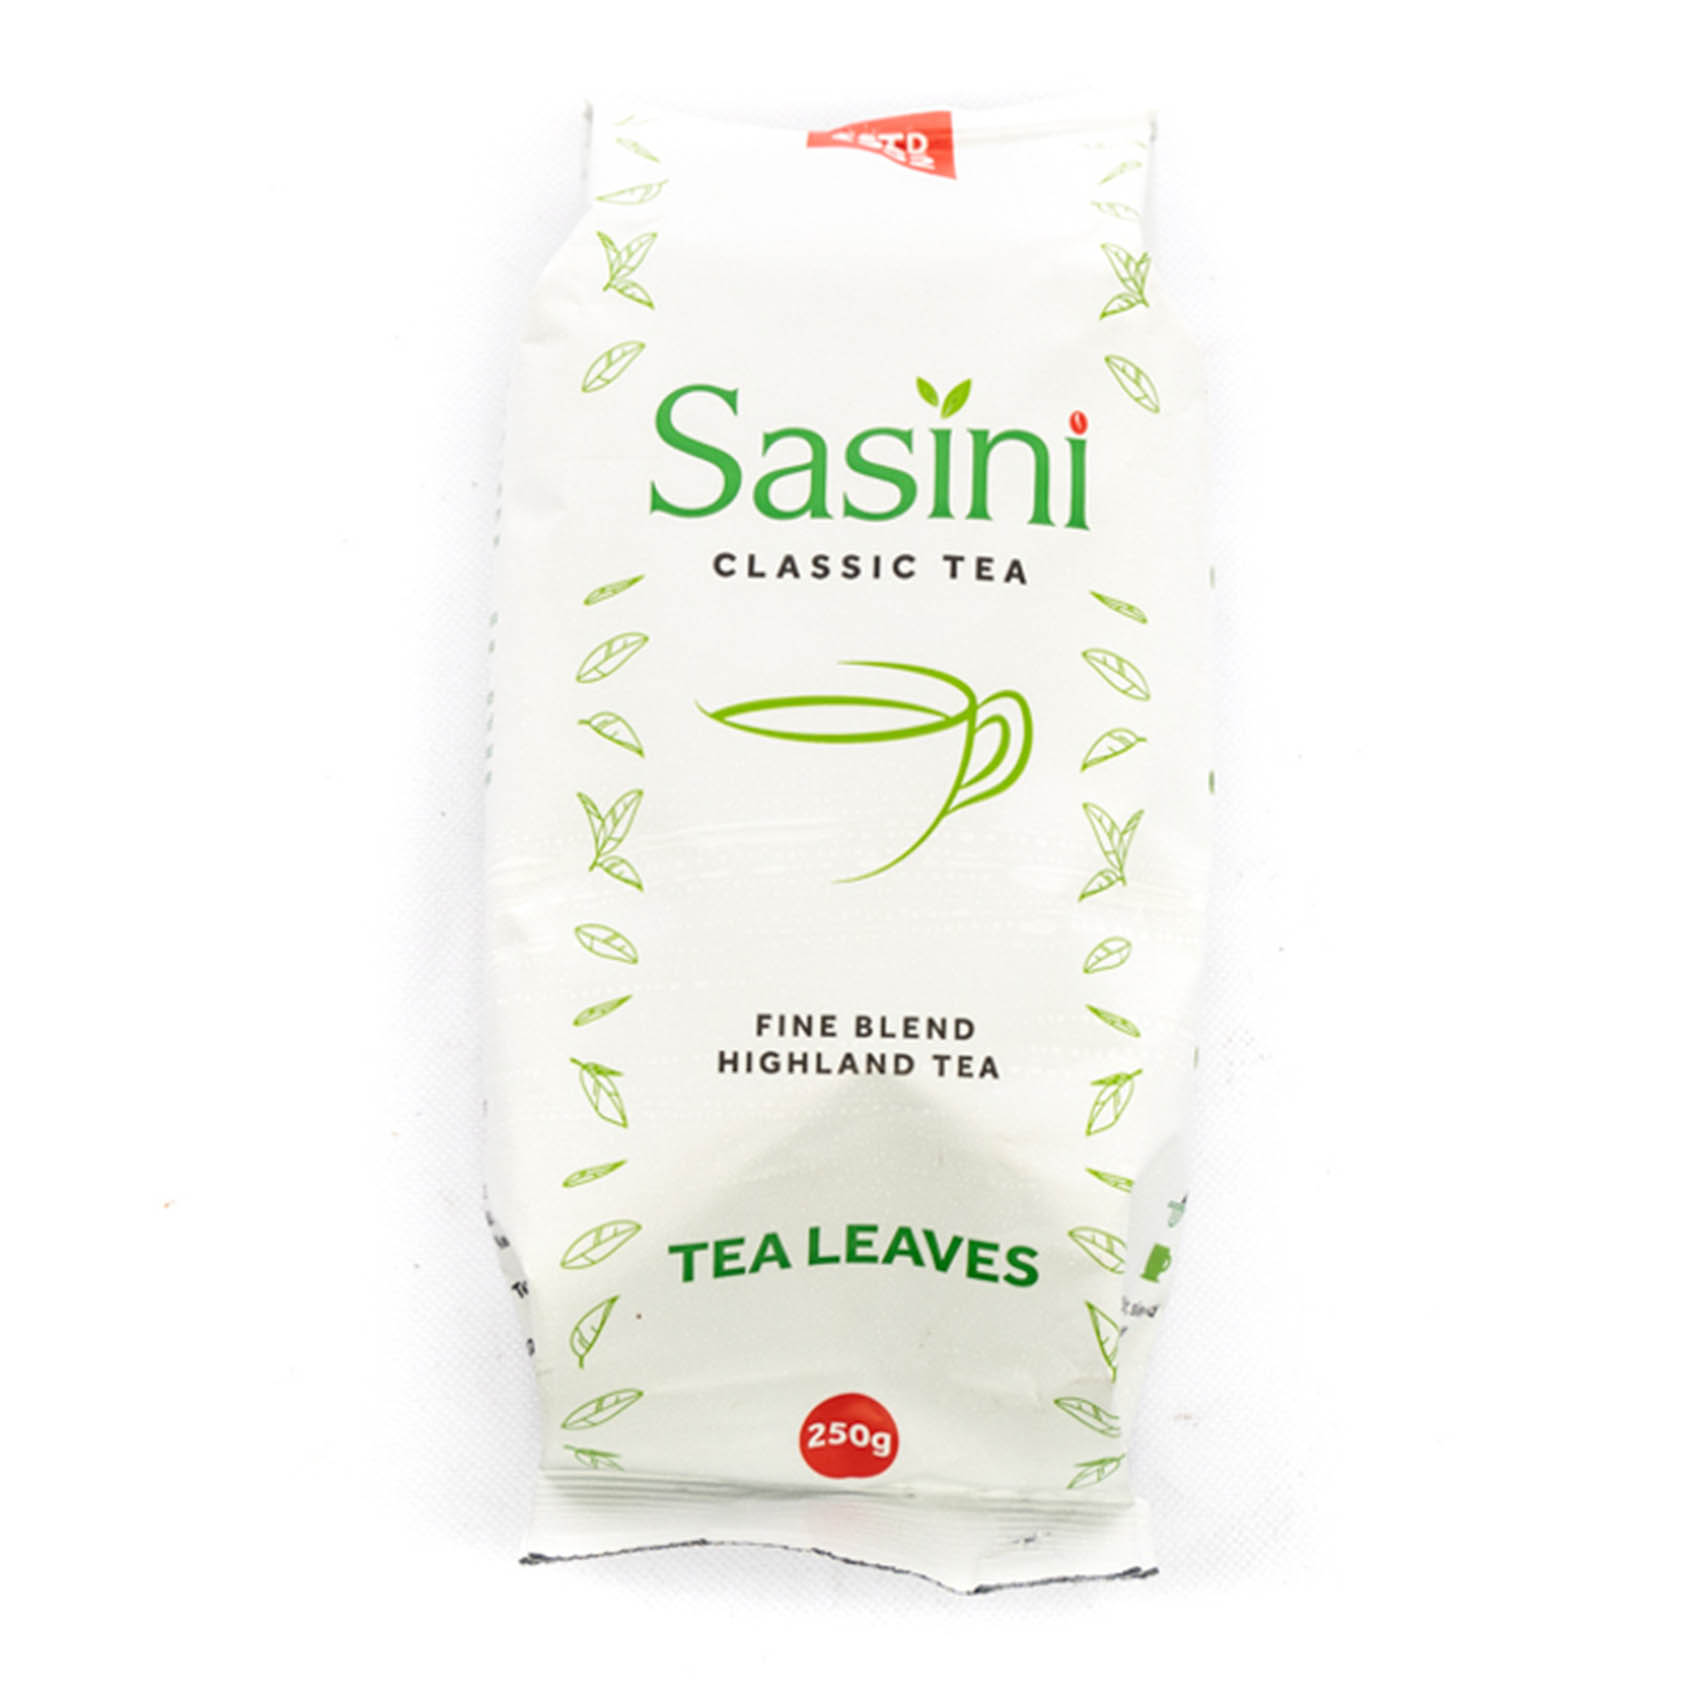 Sasini Classic Tea Leaves 250g